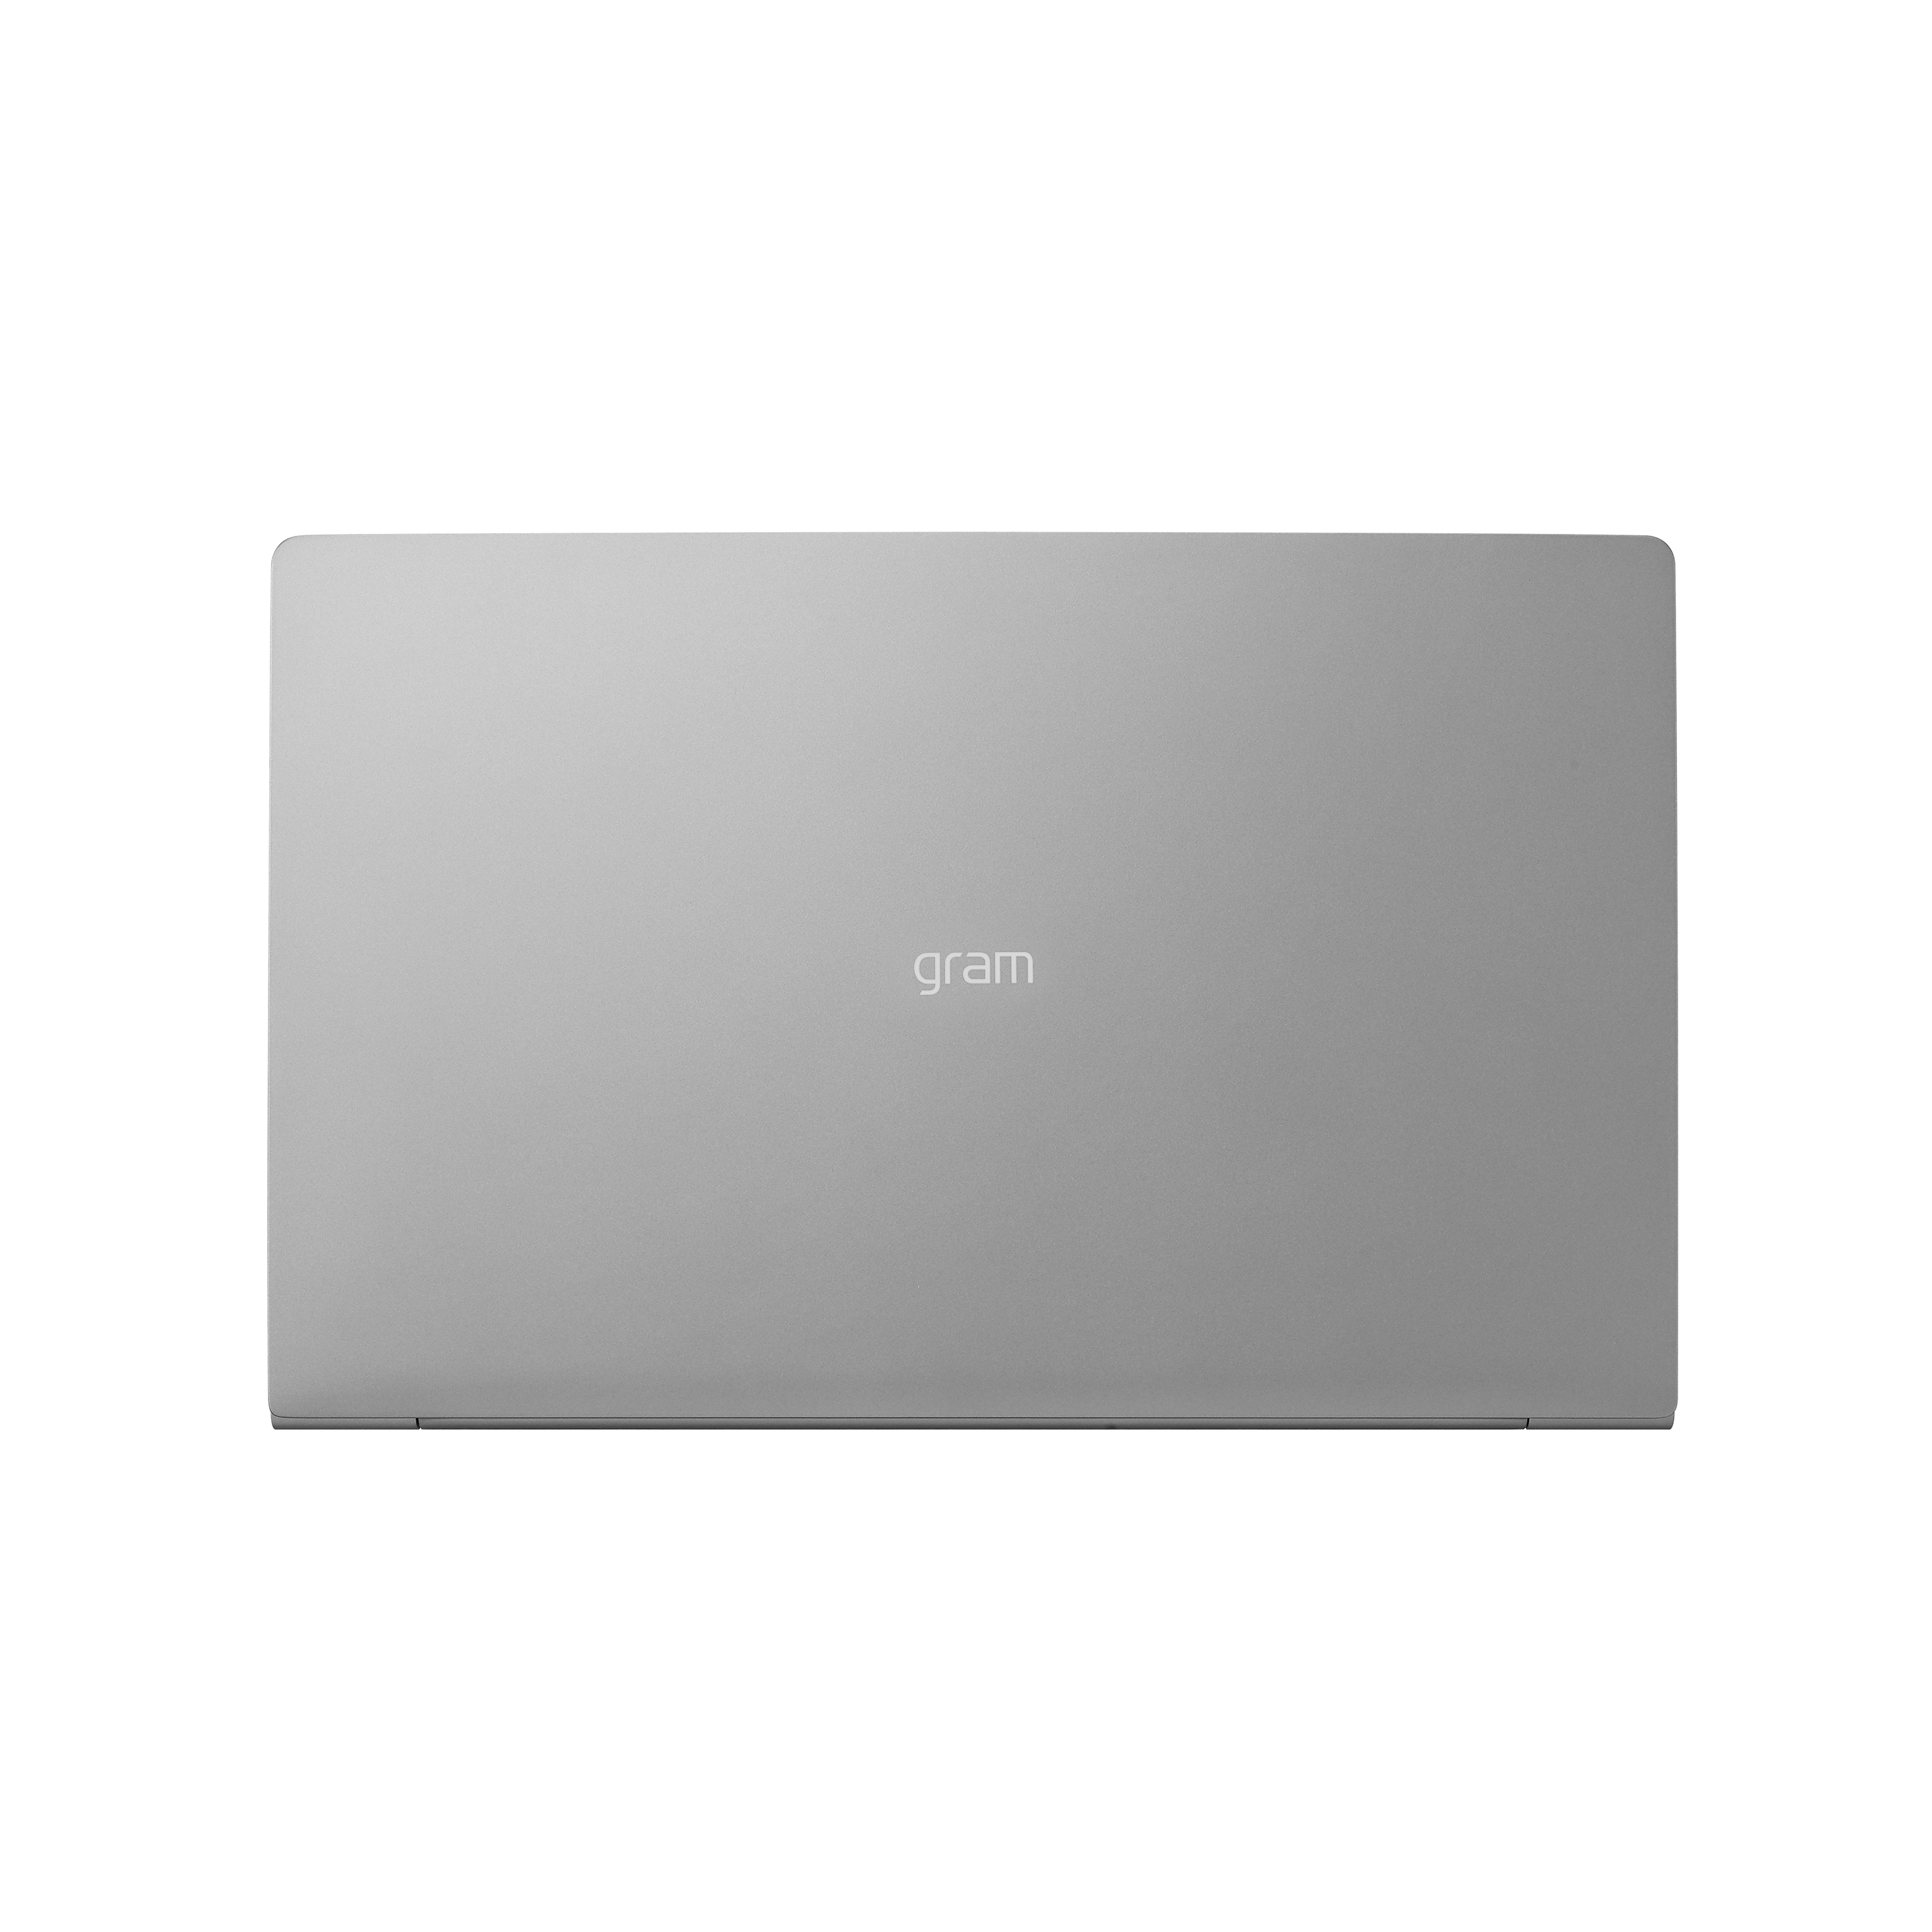 LG gram Notebooks